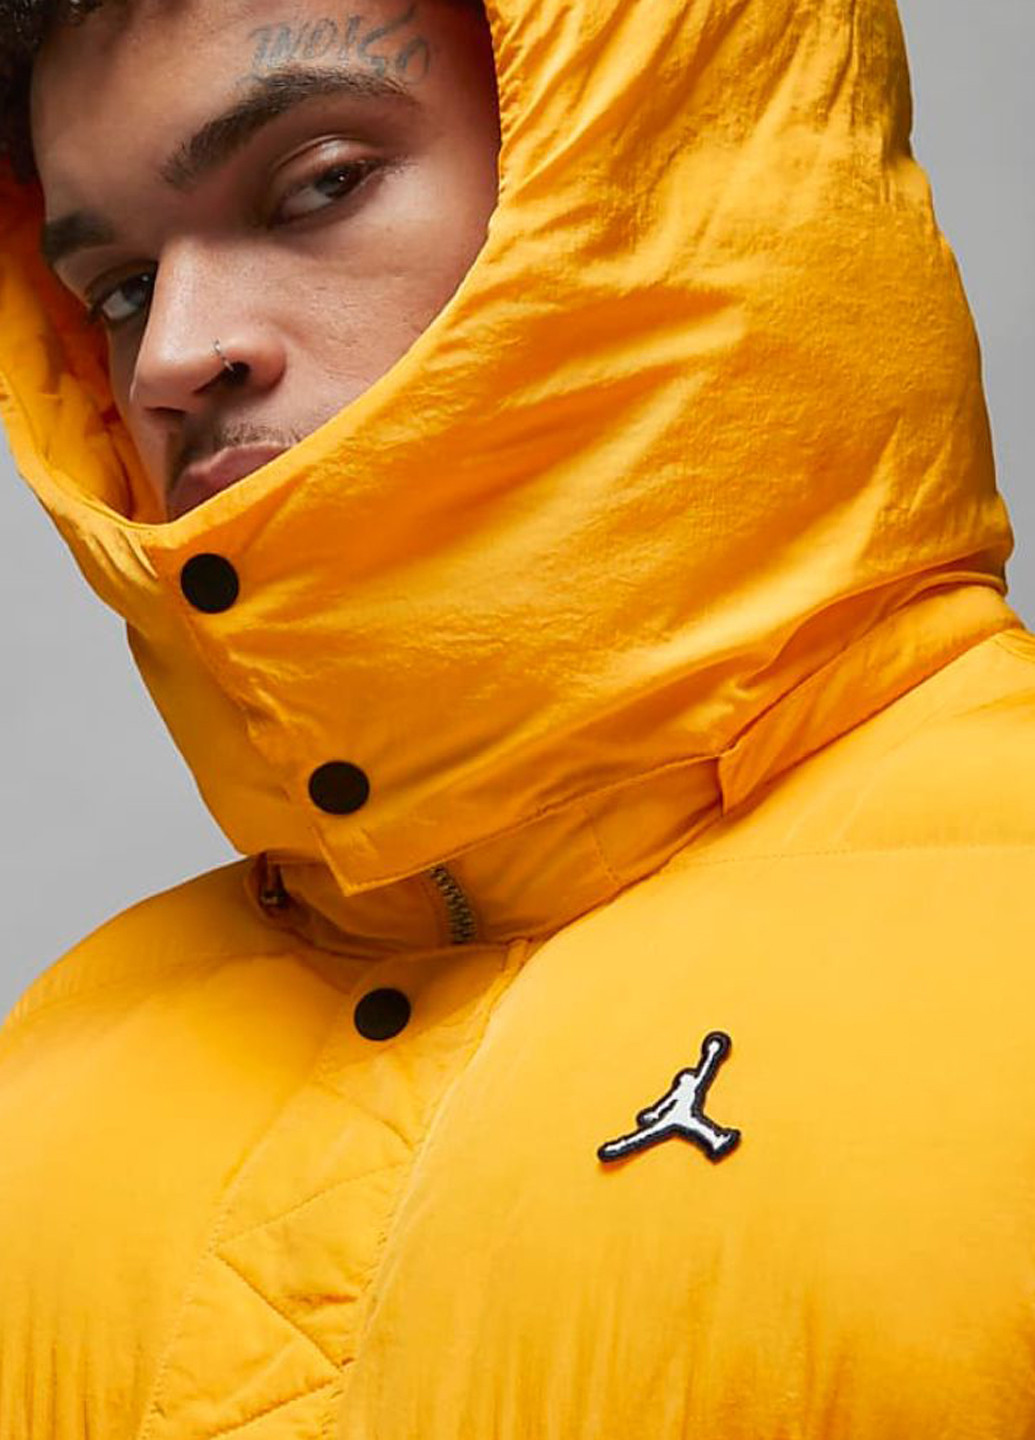 Желтая зимняя куртка dq8104-705_2024 Jordan STMT PUFFER JKT